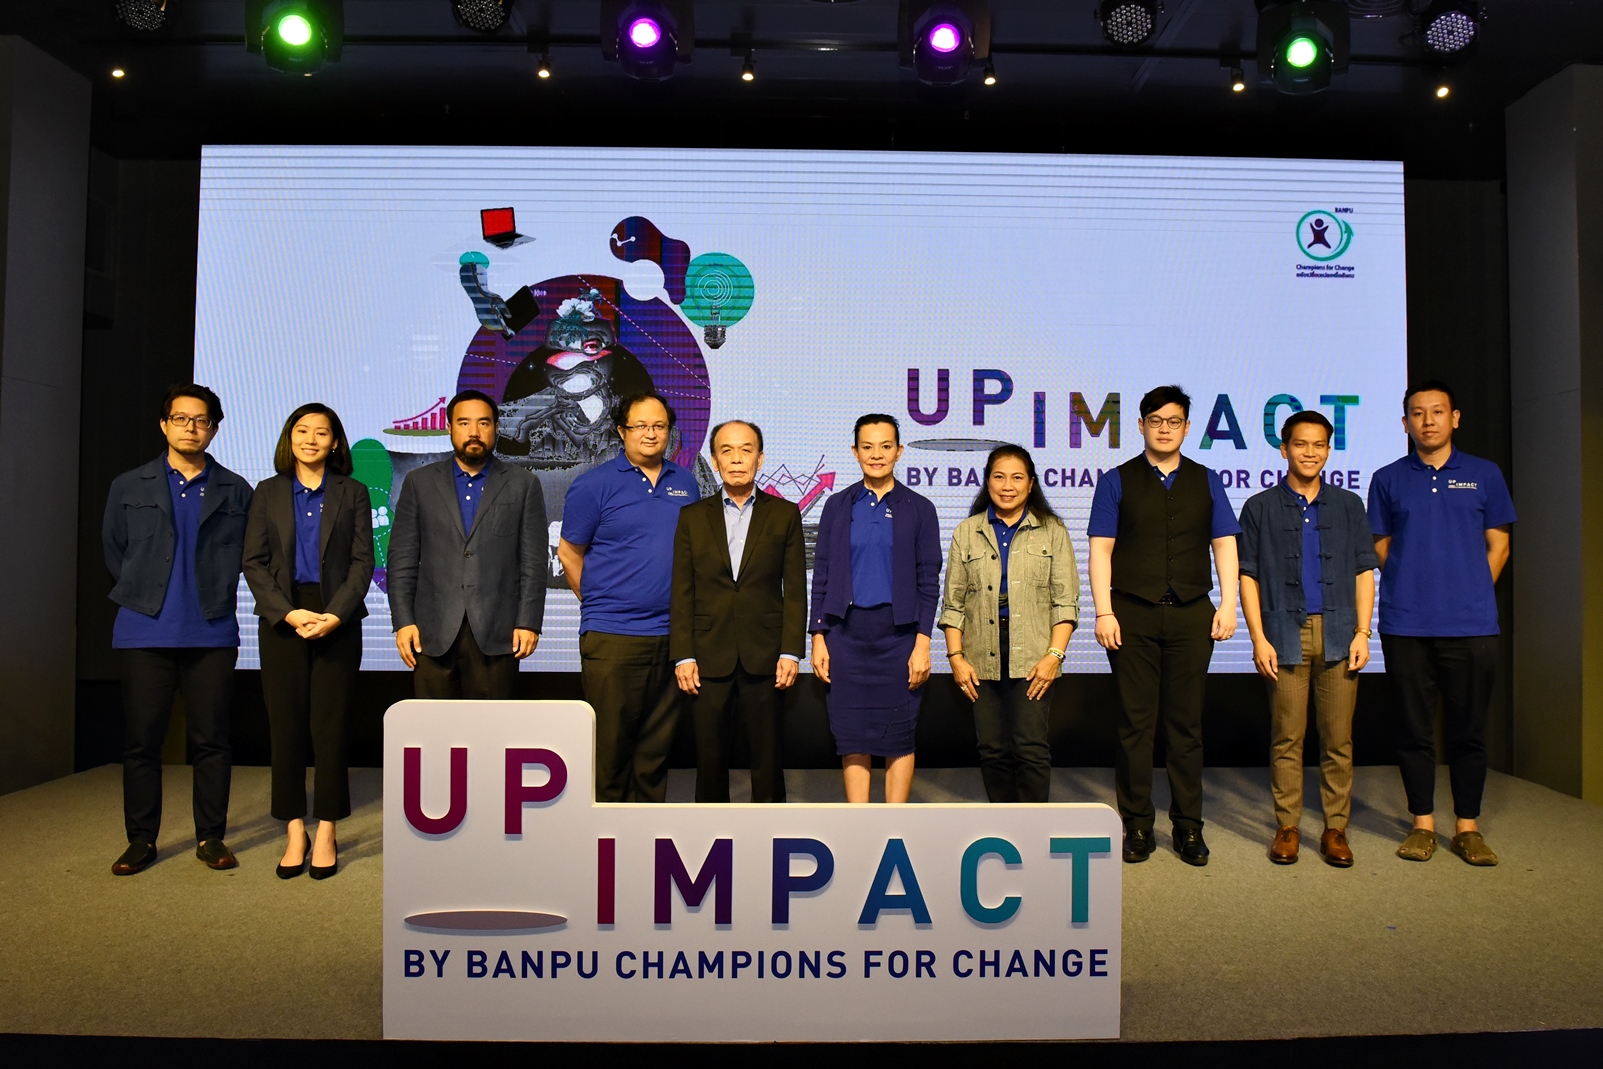 บ้านปูฯ เดินหน้าช่วยผู้ประกอบการสู้วิกฤติเศรษฐกิจ จัดกิจกรรม UpImpact by Banpu Champions for Change